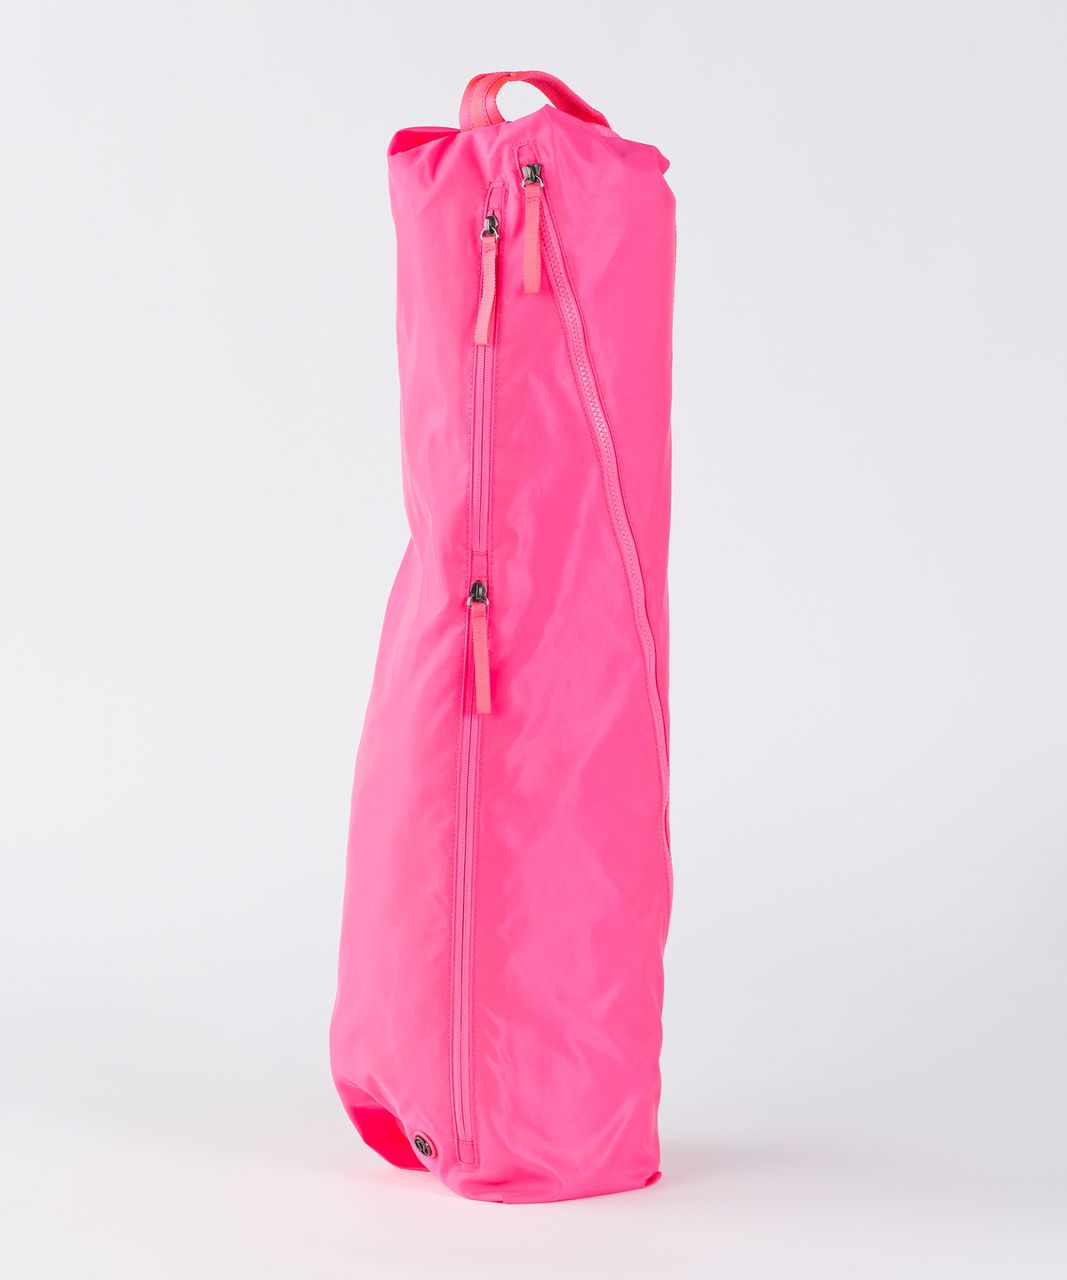 Lululemon The Yoga Bag - Neon Pink